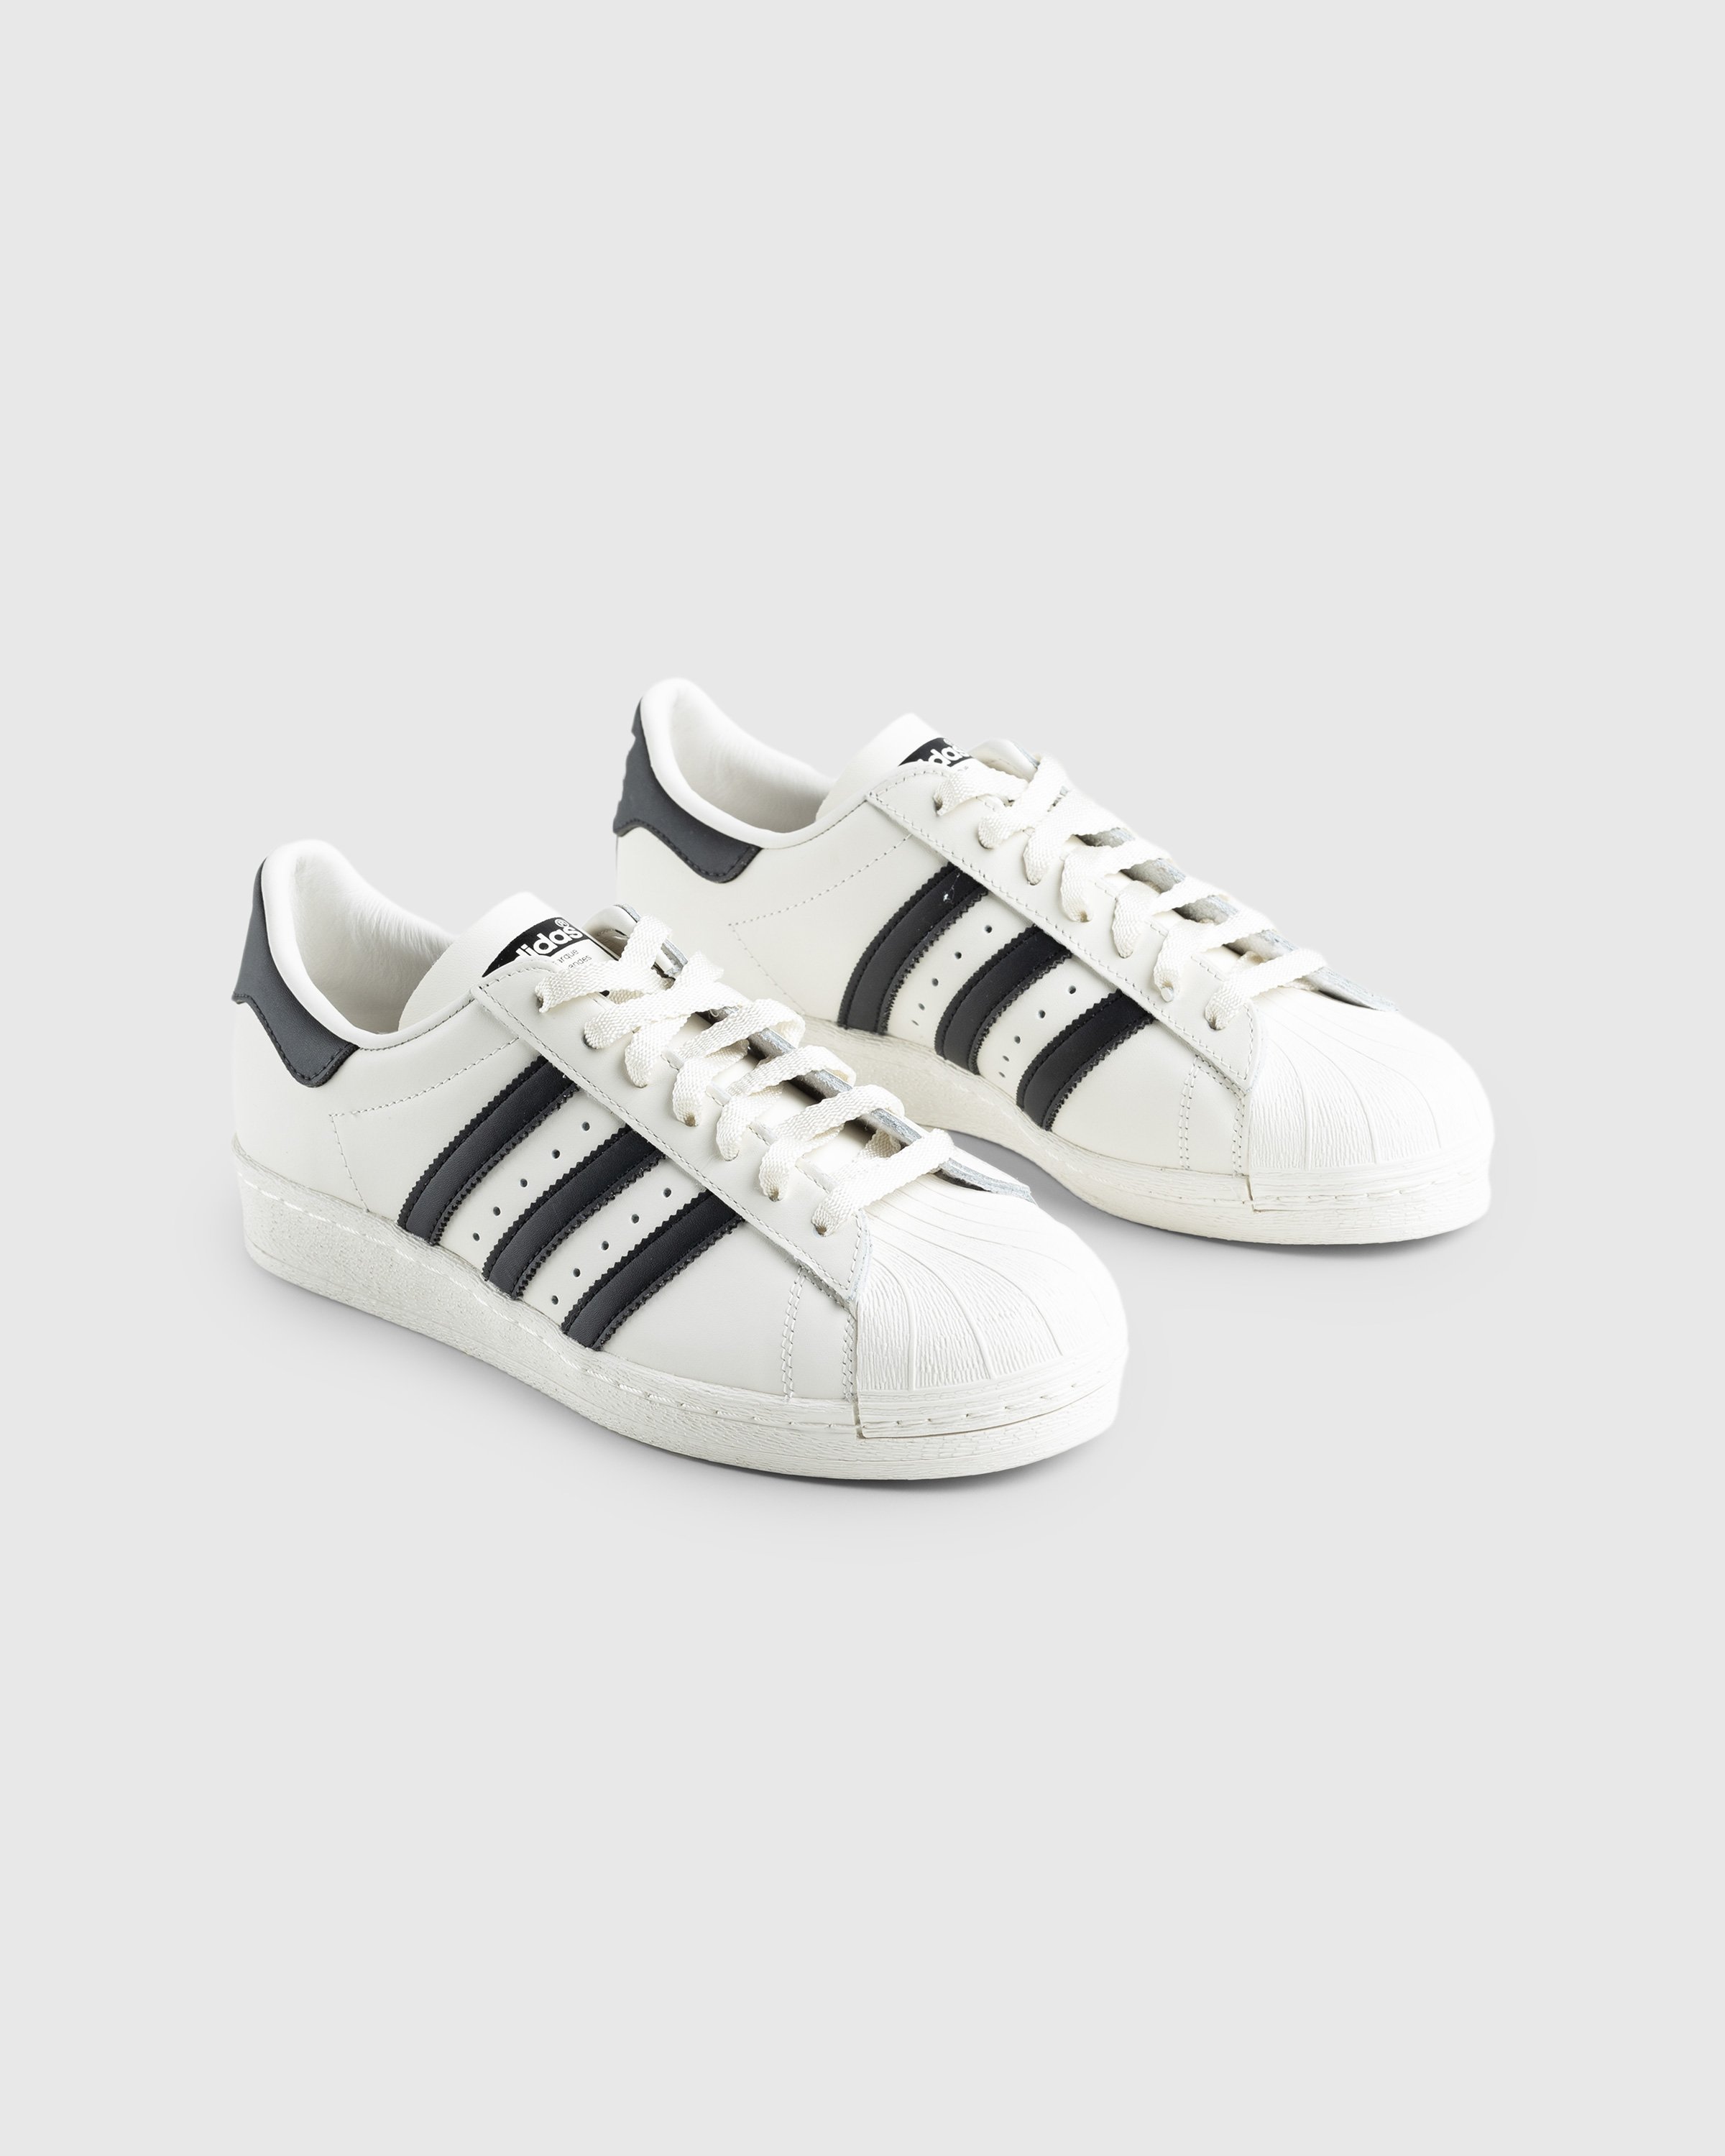 Adidas - Superstar 82 White/Black - Footwear - White - Image 3